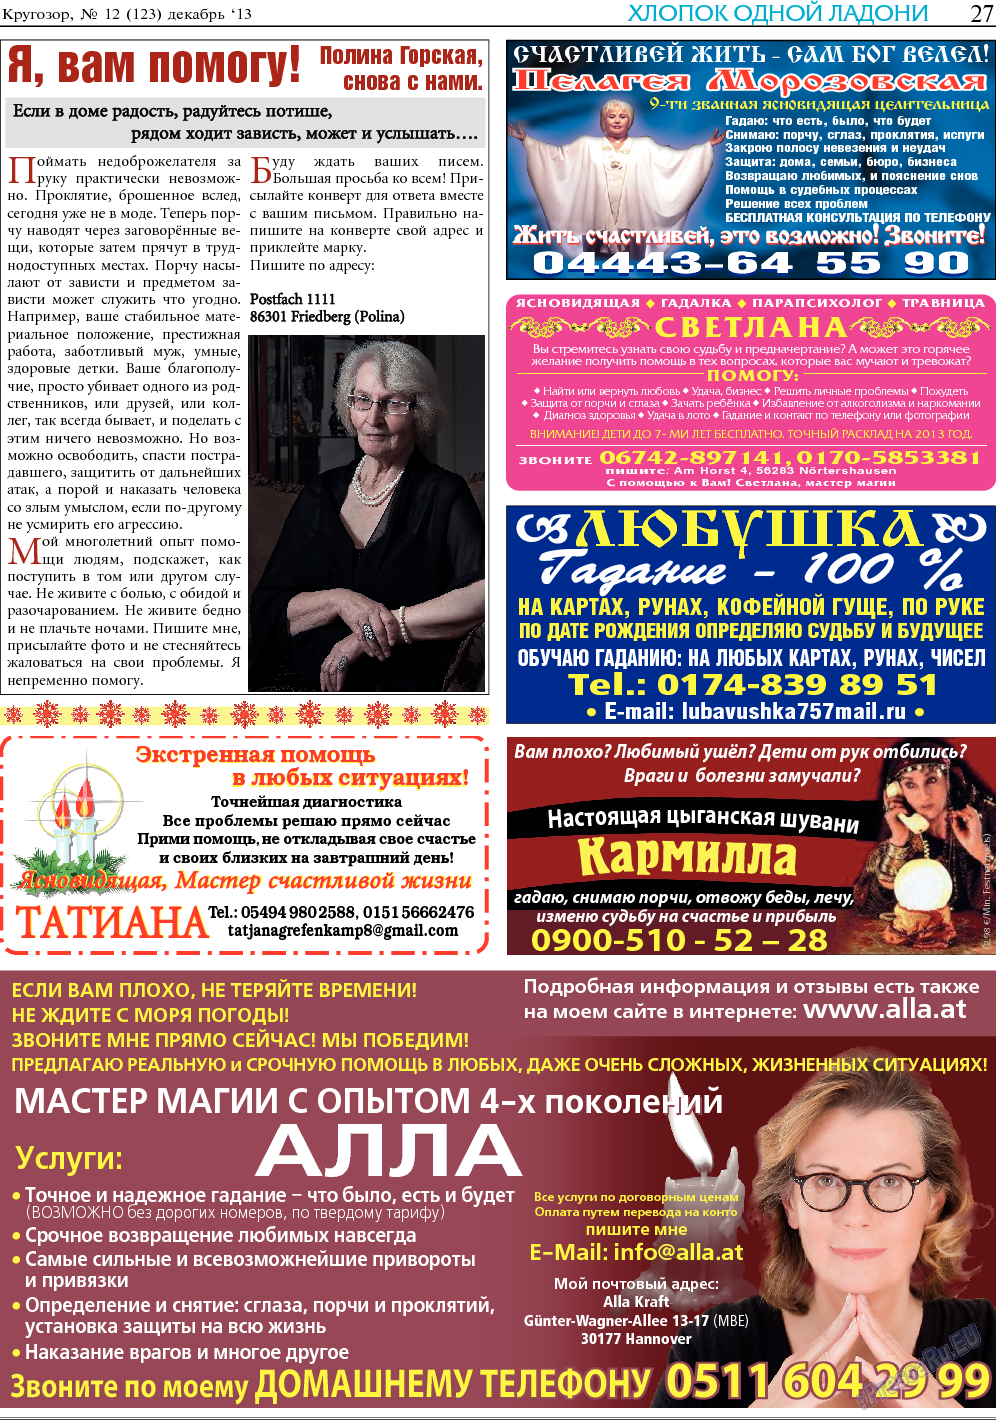 Кругозор, газета. 2013 №12 стр.27